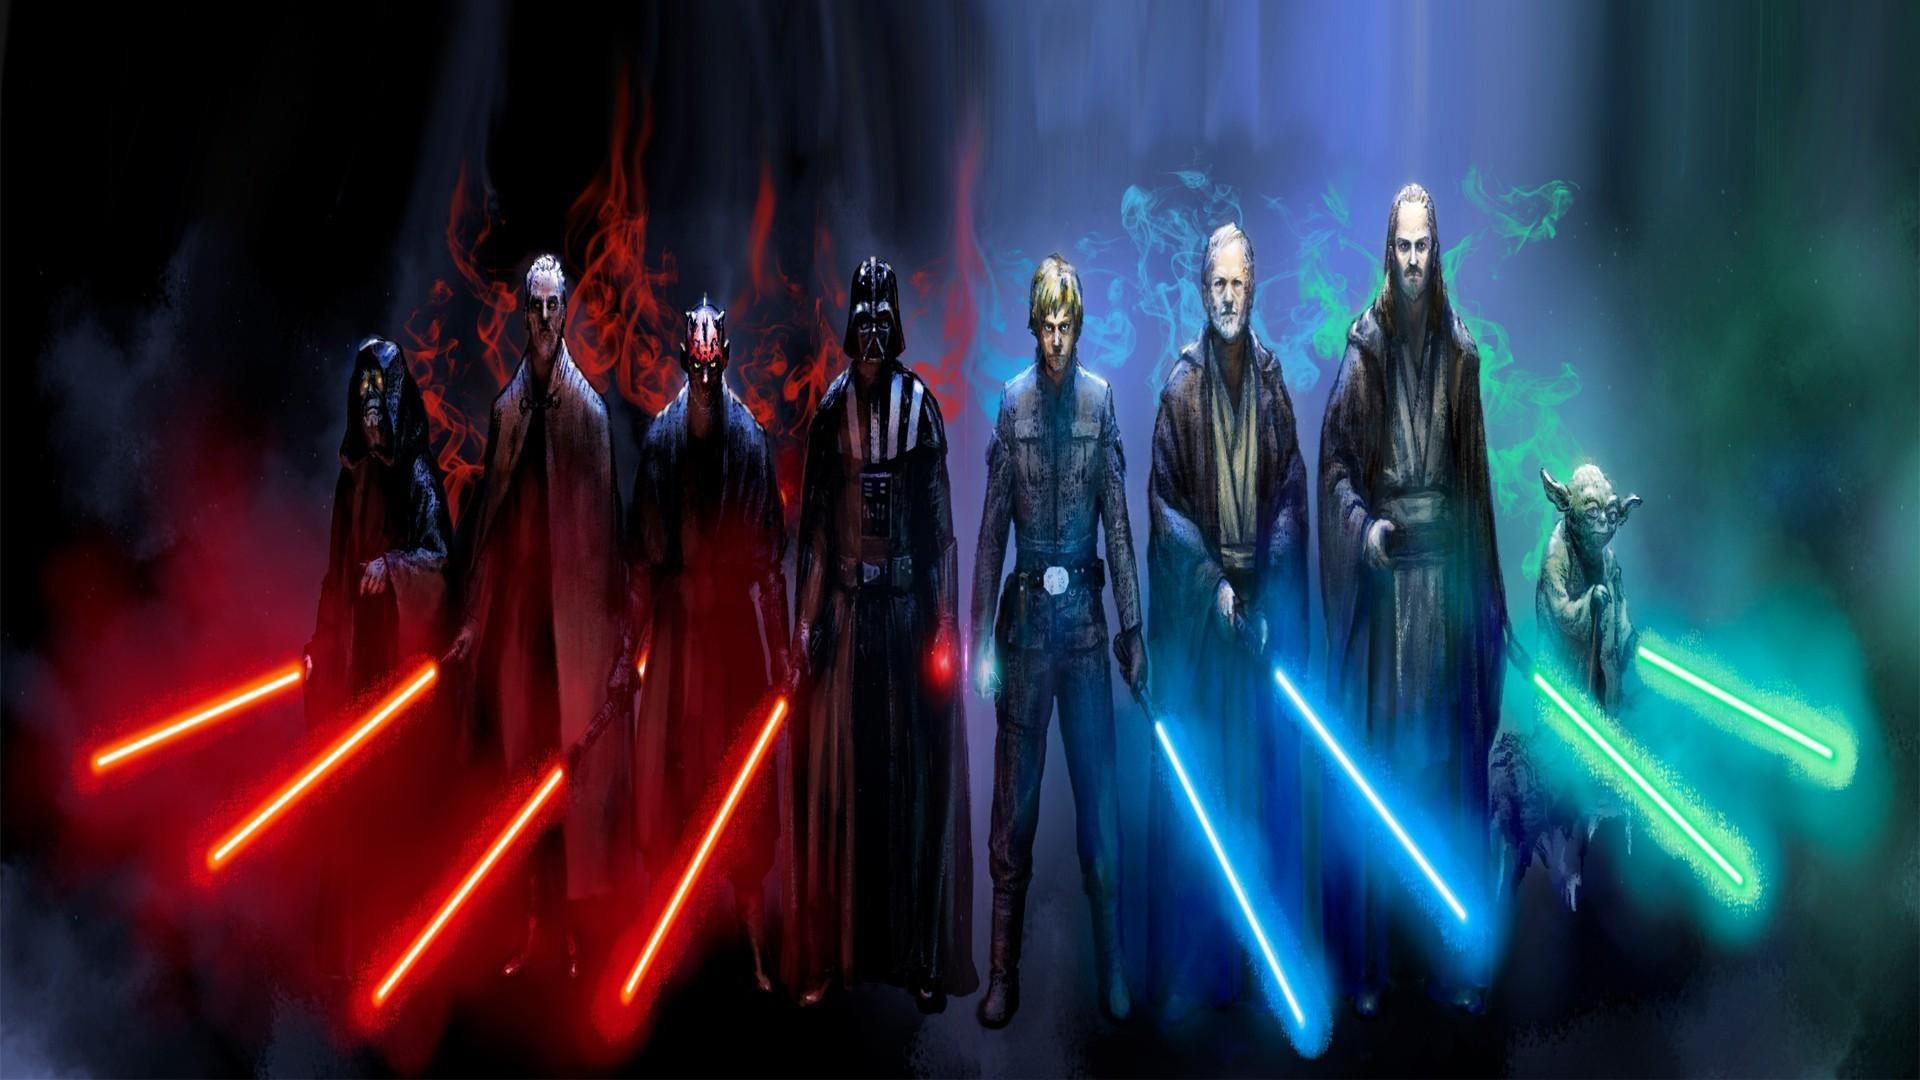 Sith Vs Jedi Wallpaper.